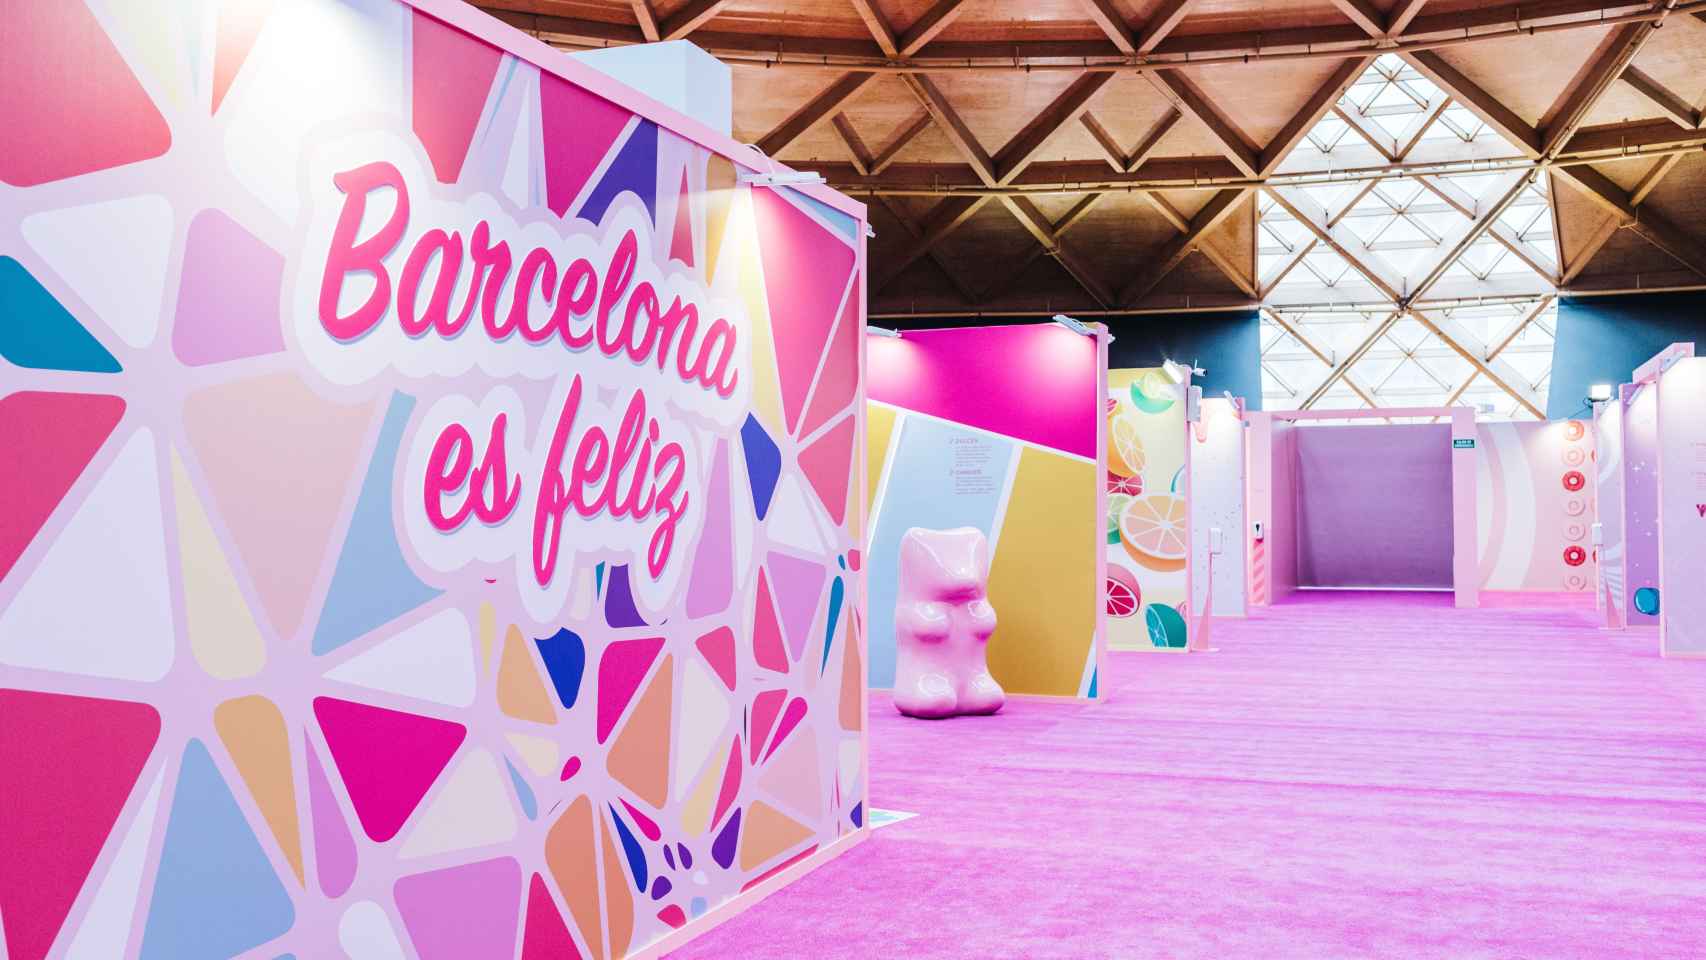 'Barcelona es feliz', emblema de 'El museo más dulce del mundo' / CEDIDA